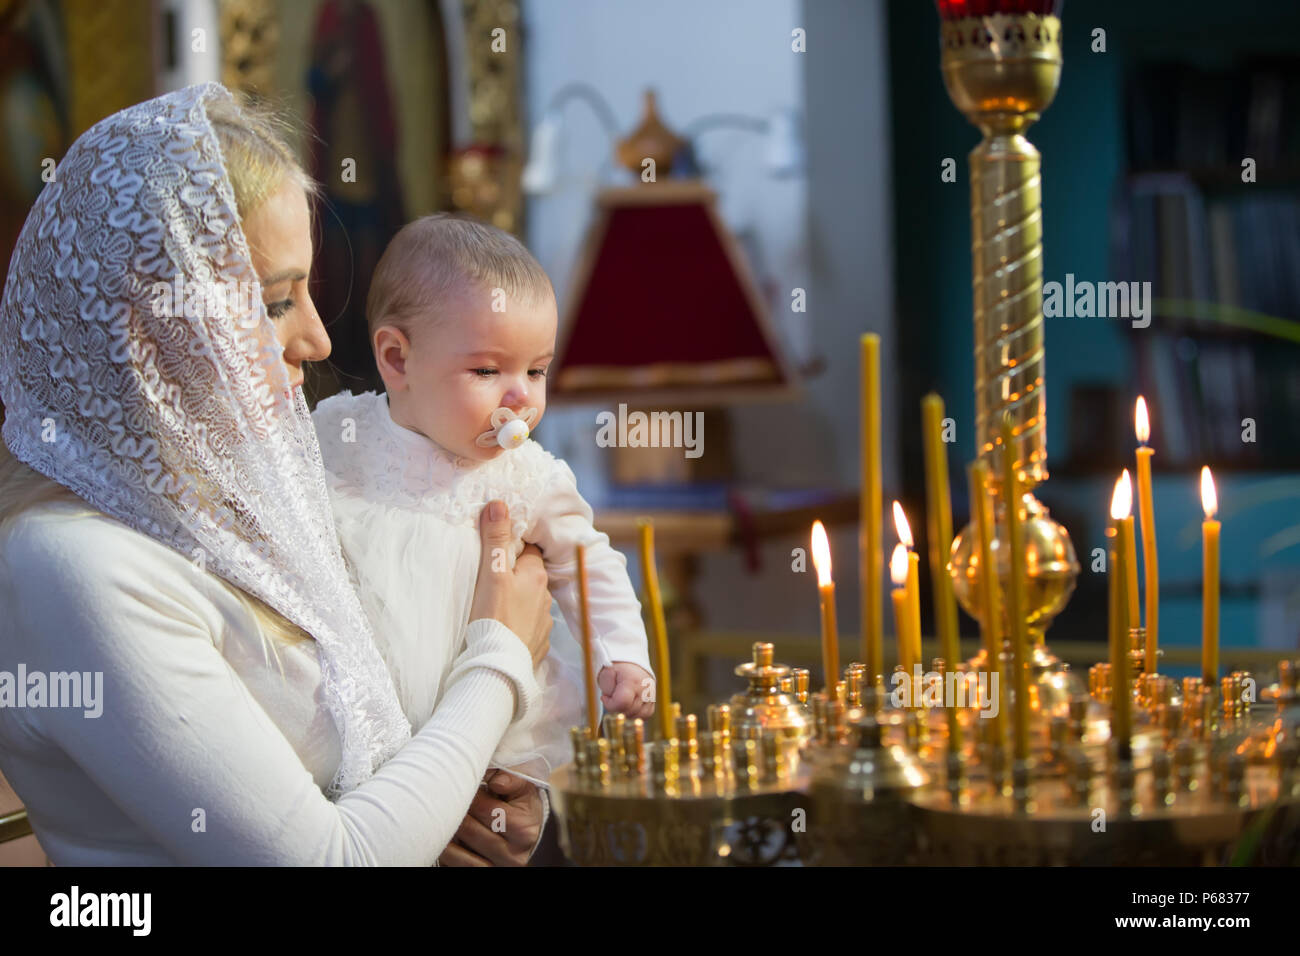 Belarus, Gomel, am 25. März. 2018. Die Prudhkovsky Kirche. Die Mutter hält das Kind auf ihren Händen im Ritus der Taufe. Akzeptieren religion Stockfoto